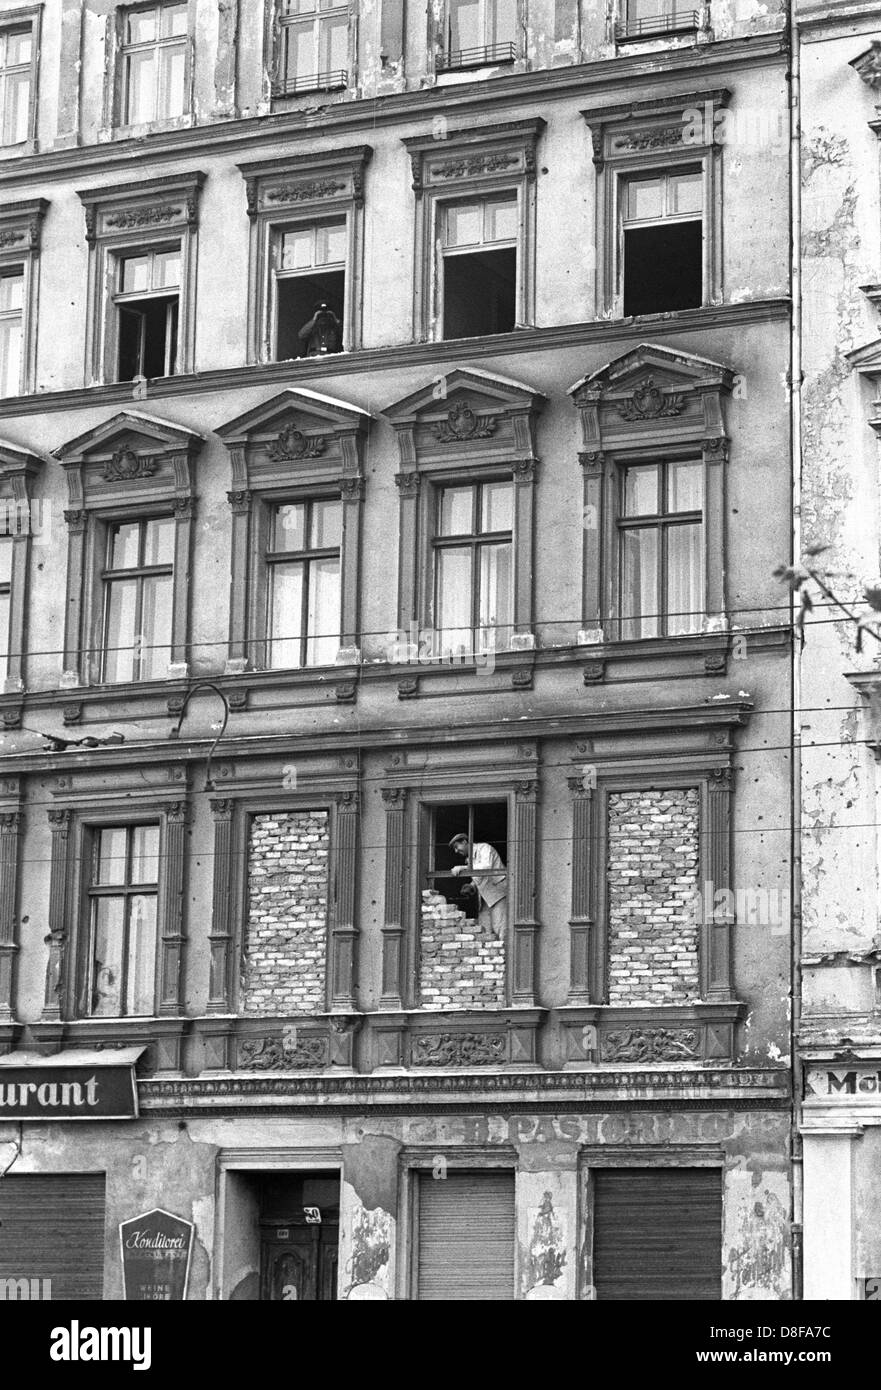 Grenzhäuser in einem der an der Bernauerstraße werden am 1. Oktober 1961  Fenster, die den Blick auf Berlin Ouest freigeben, zugemauert. Kurz nach  dem Mauerbau Menschen sind aus den Fenstern der im